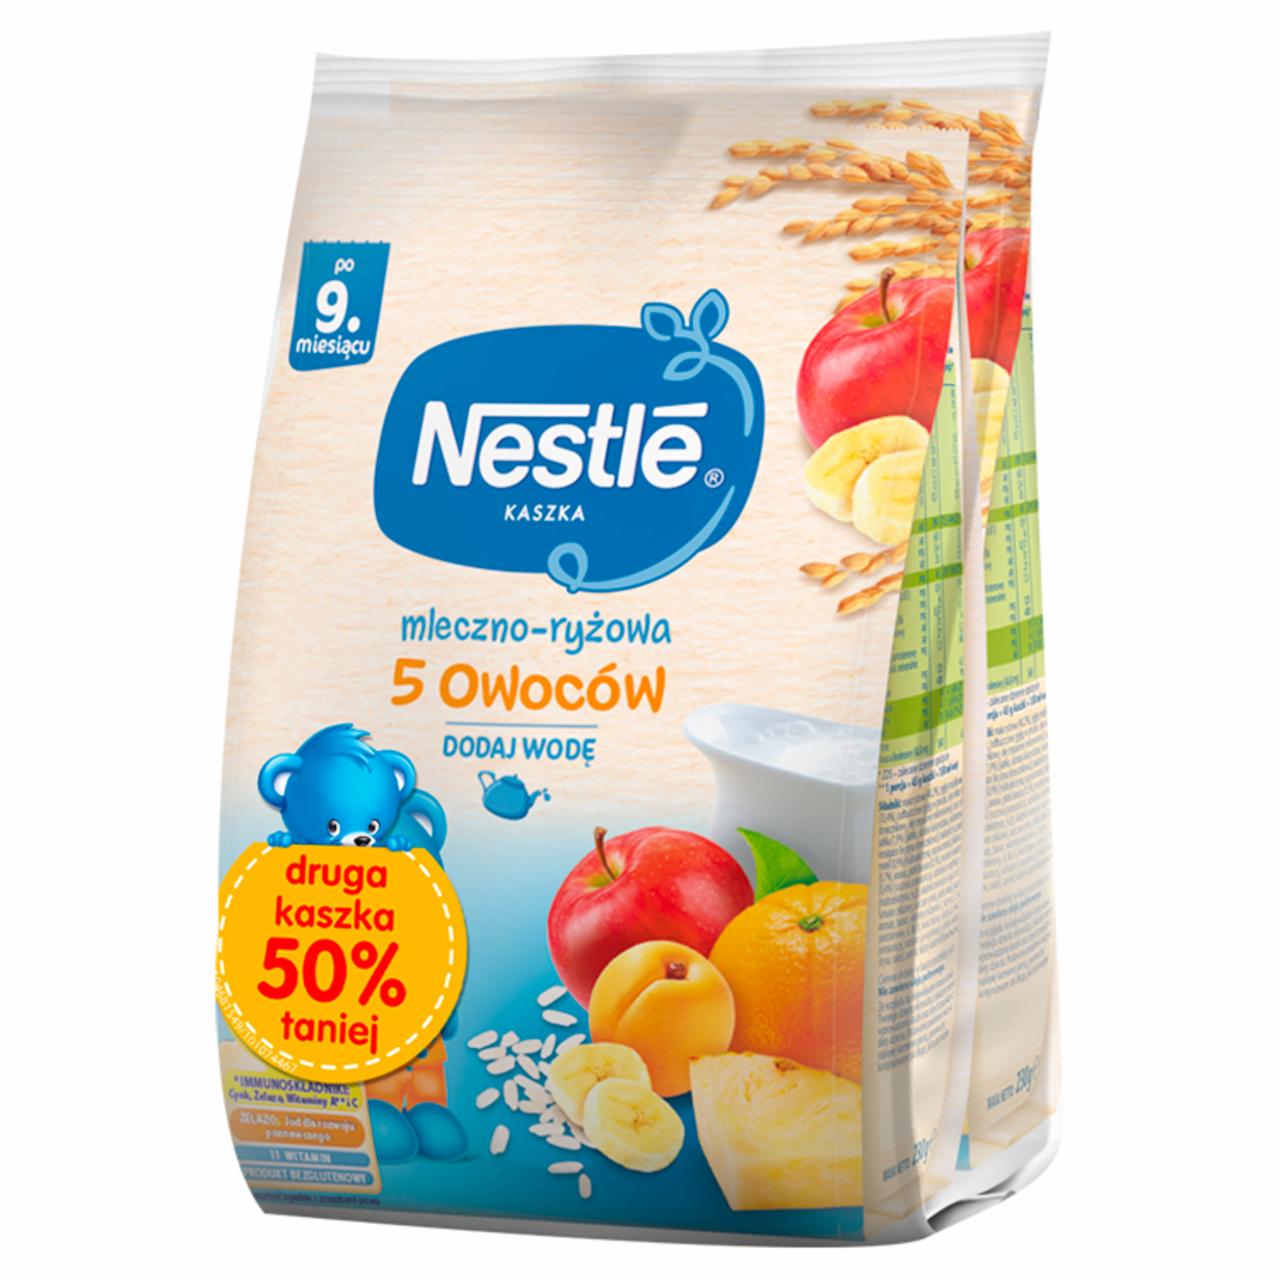 Zdjęcia - Nestlé Kaszka mleczno-ryżowa 5 owoców po 9. miesiącu 460 g (2 x 230 g)